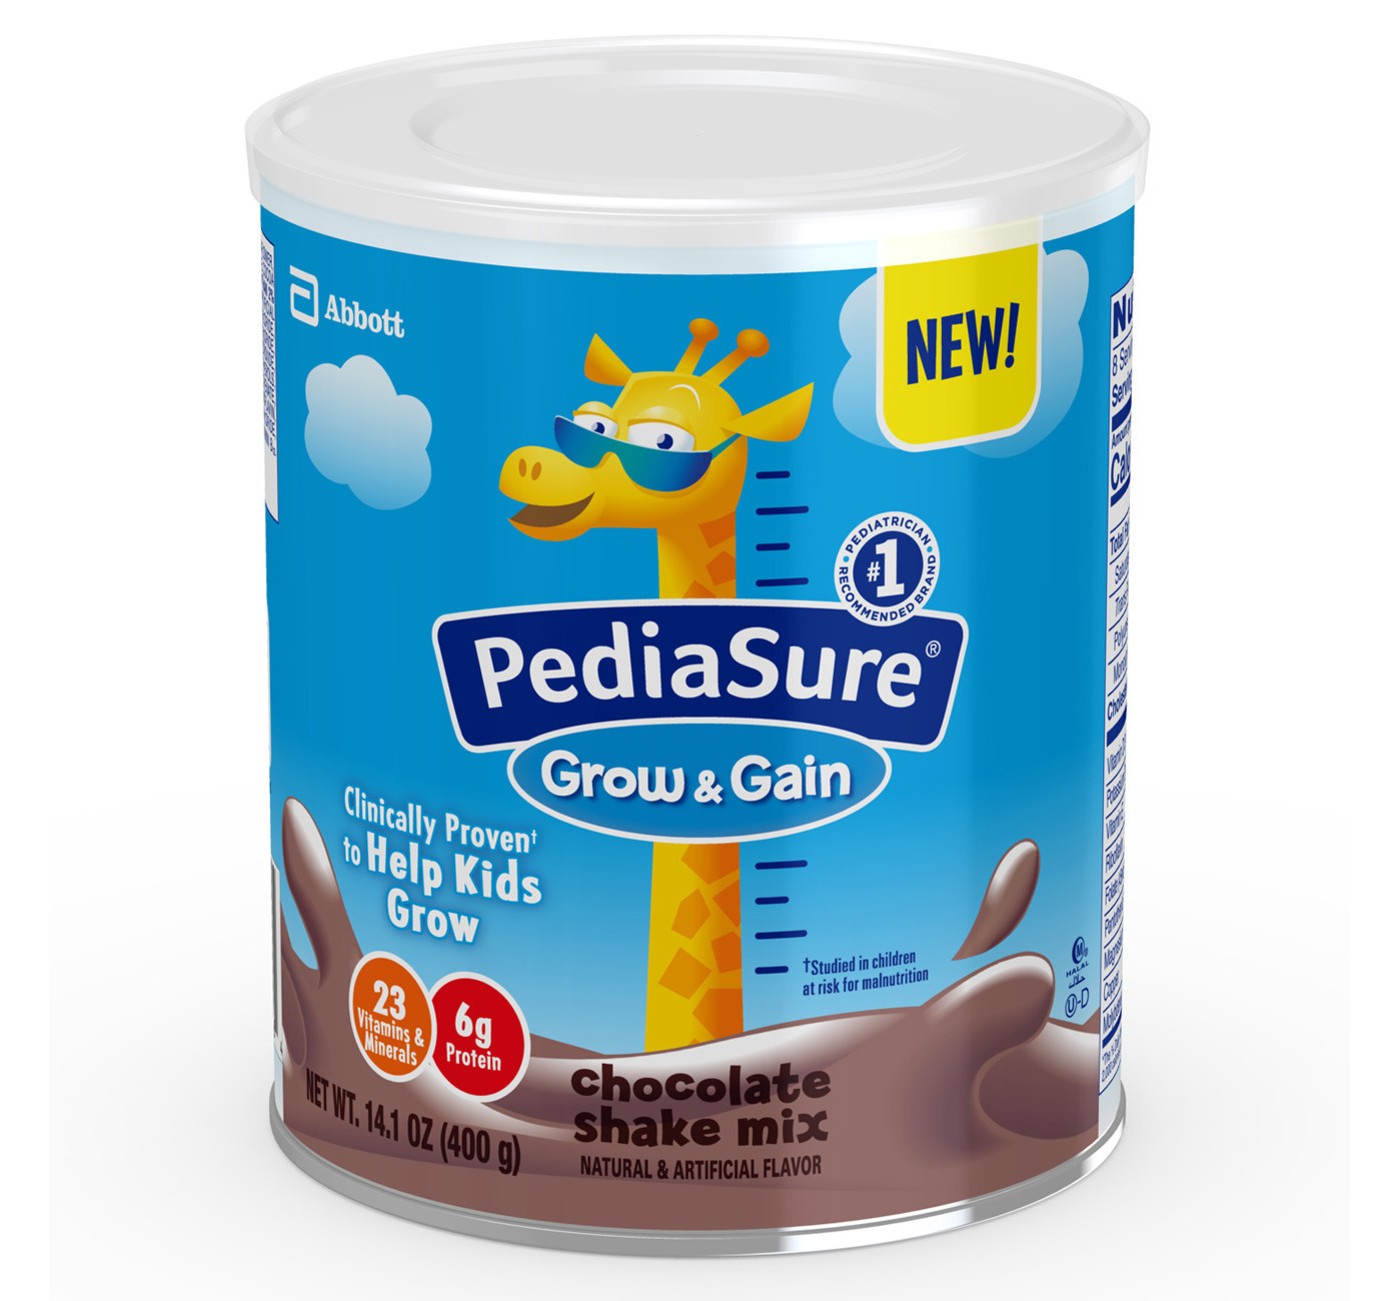 Sữa Pediasure Grow & Gain Dạng Bột 400g - 3 Hương vị Vanilla, Chocolate, Dâu